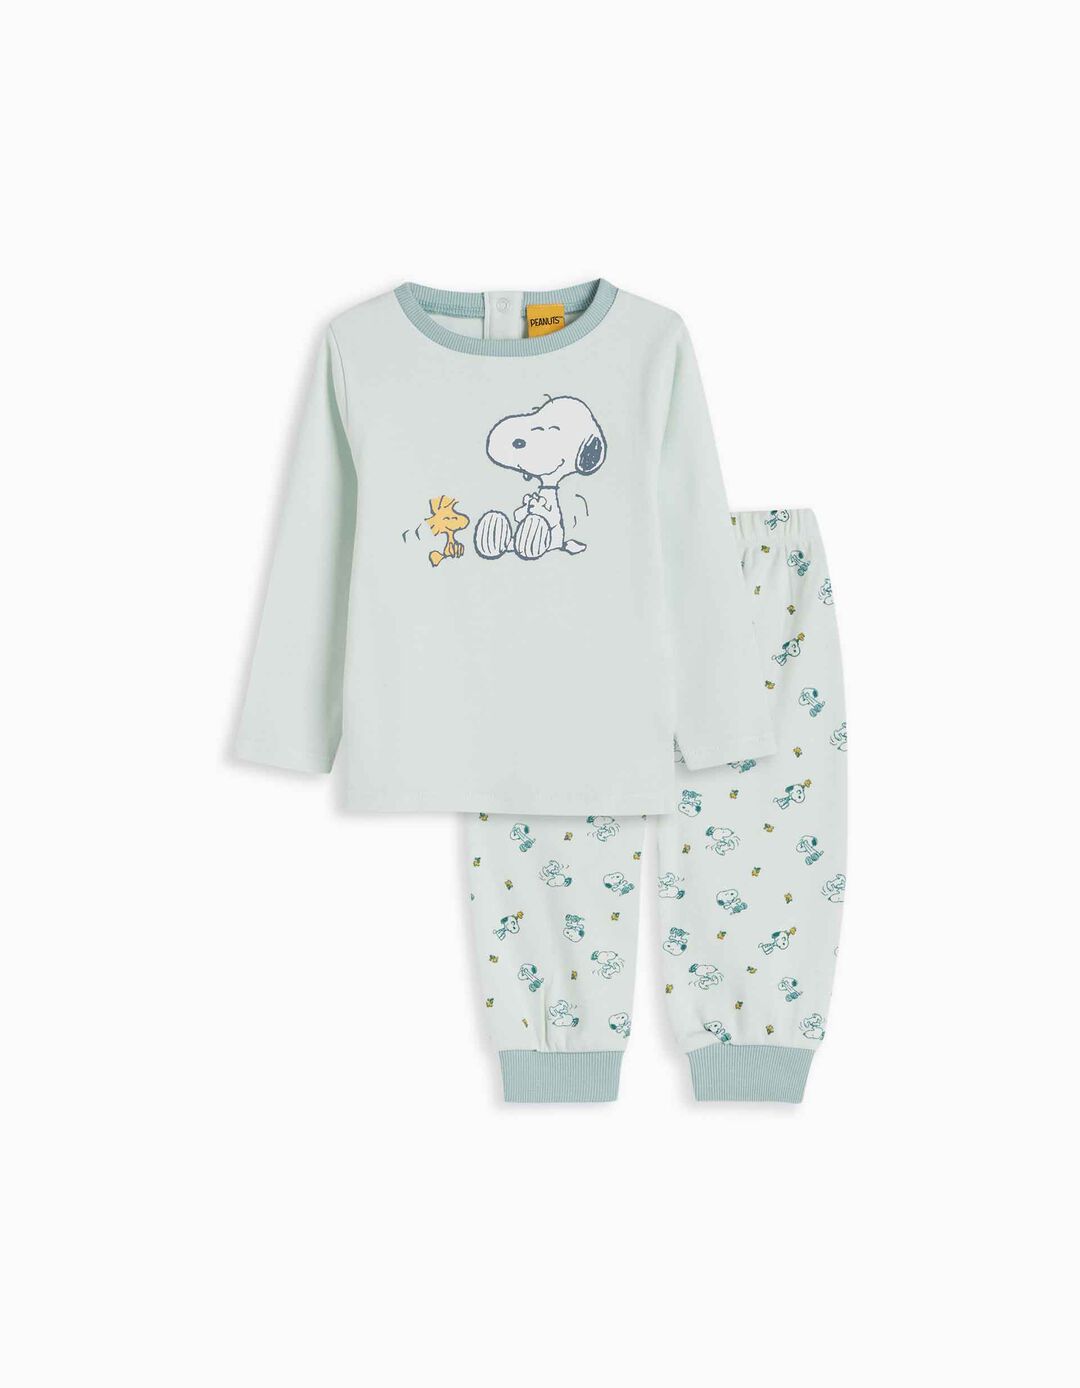 'Snoopy' pajamas, Baby Boy, Light Blue